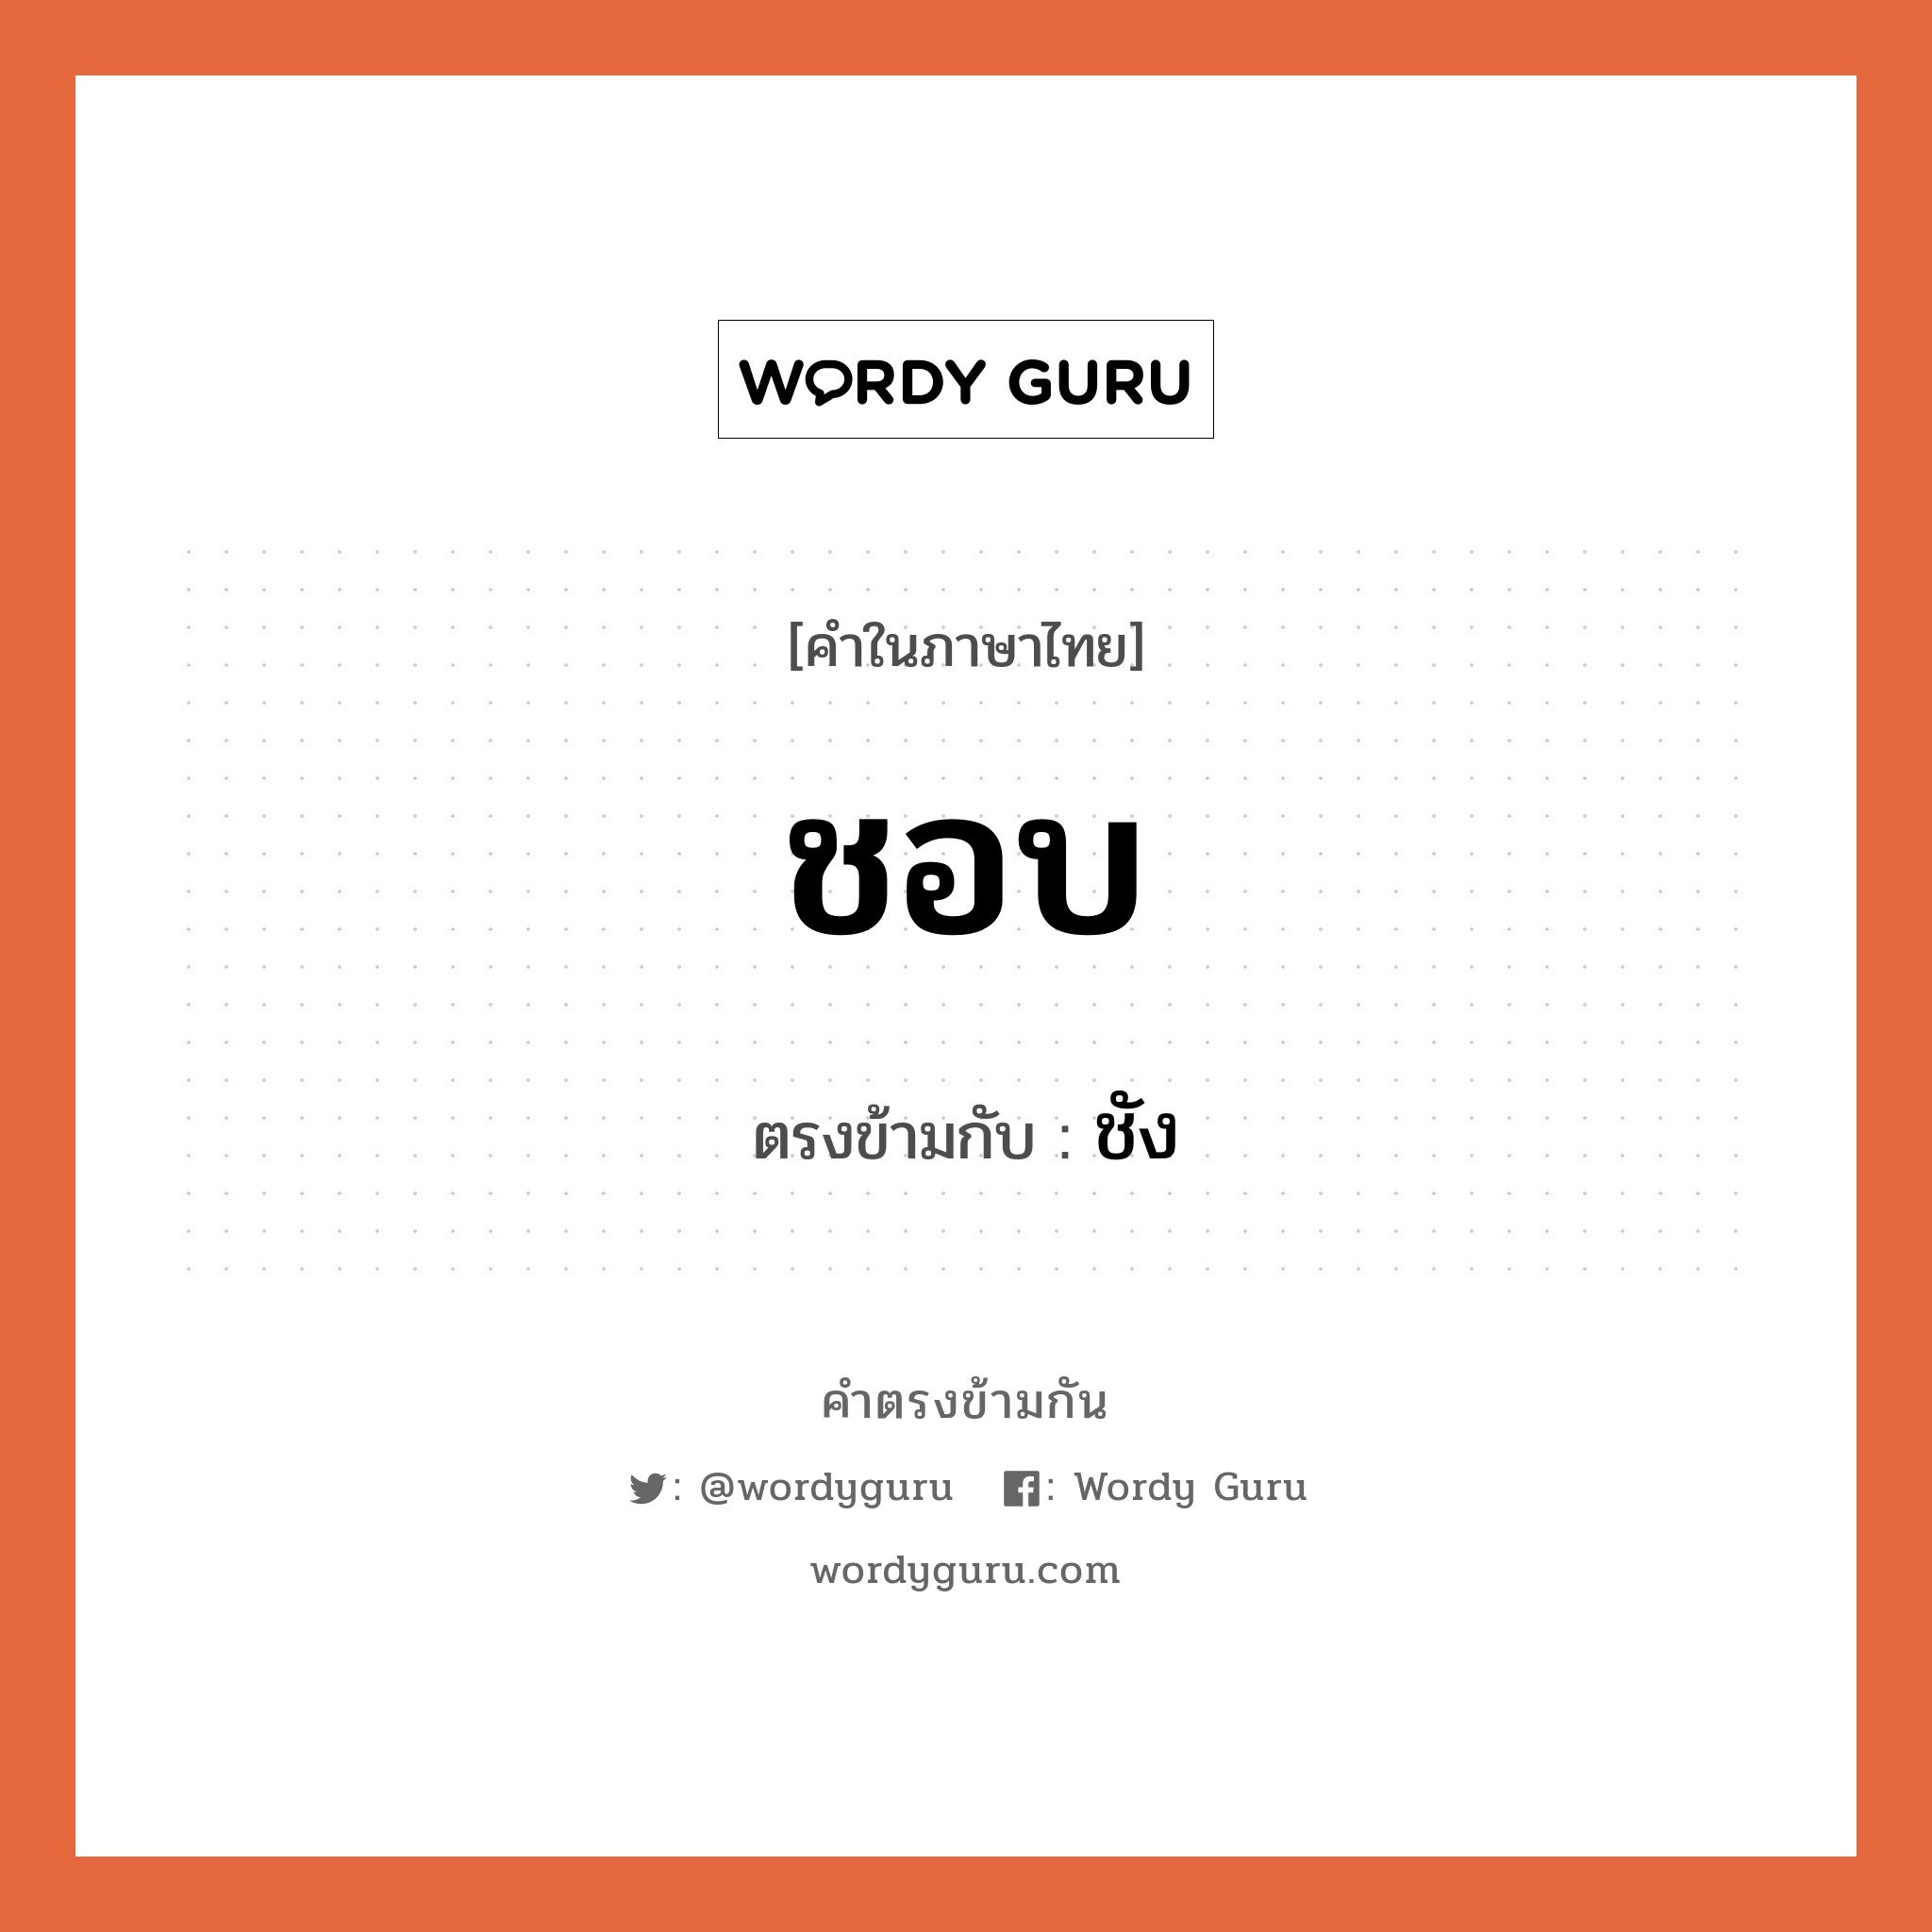 ชอบ เป็นคำตรงข้ามกับคำไหนบ้าง?, คำในภาษาไทย ชอบ ตรงข้ามกับ ชัง หมวด ชัง